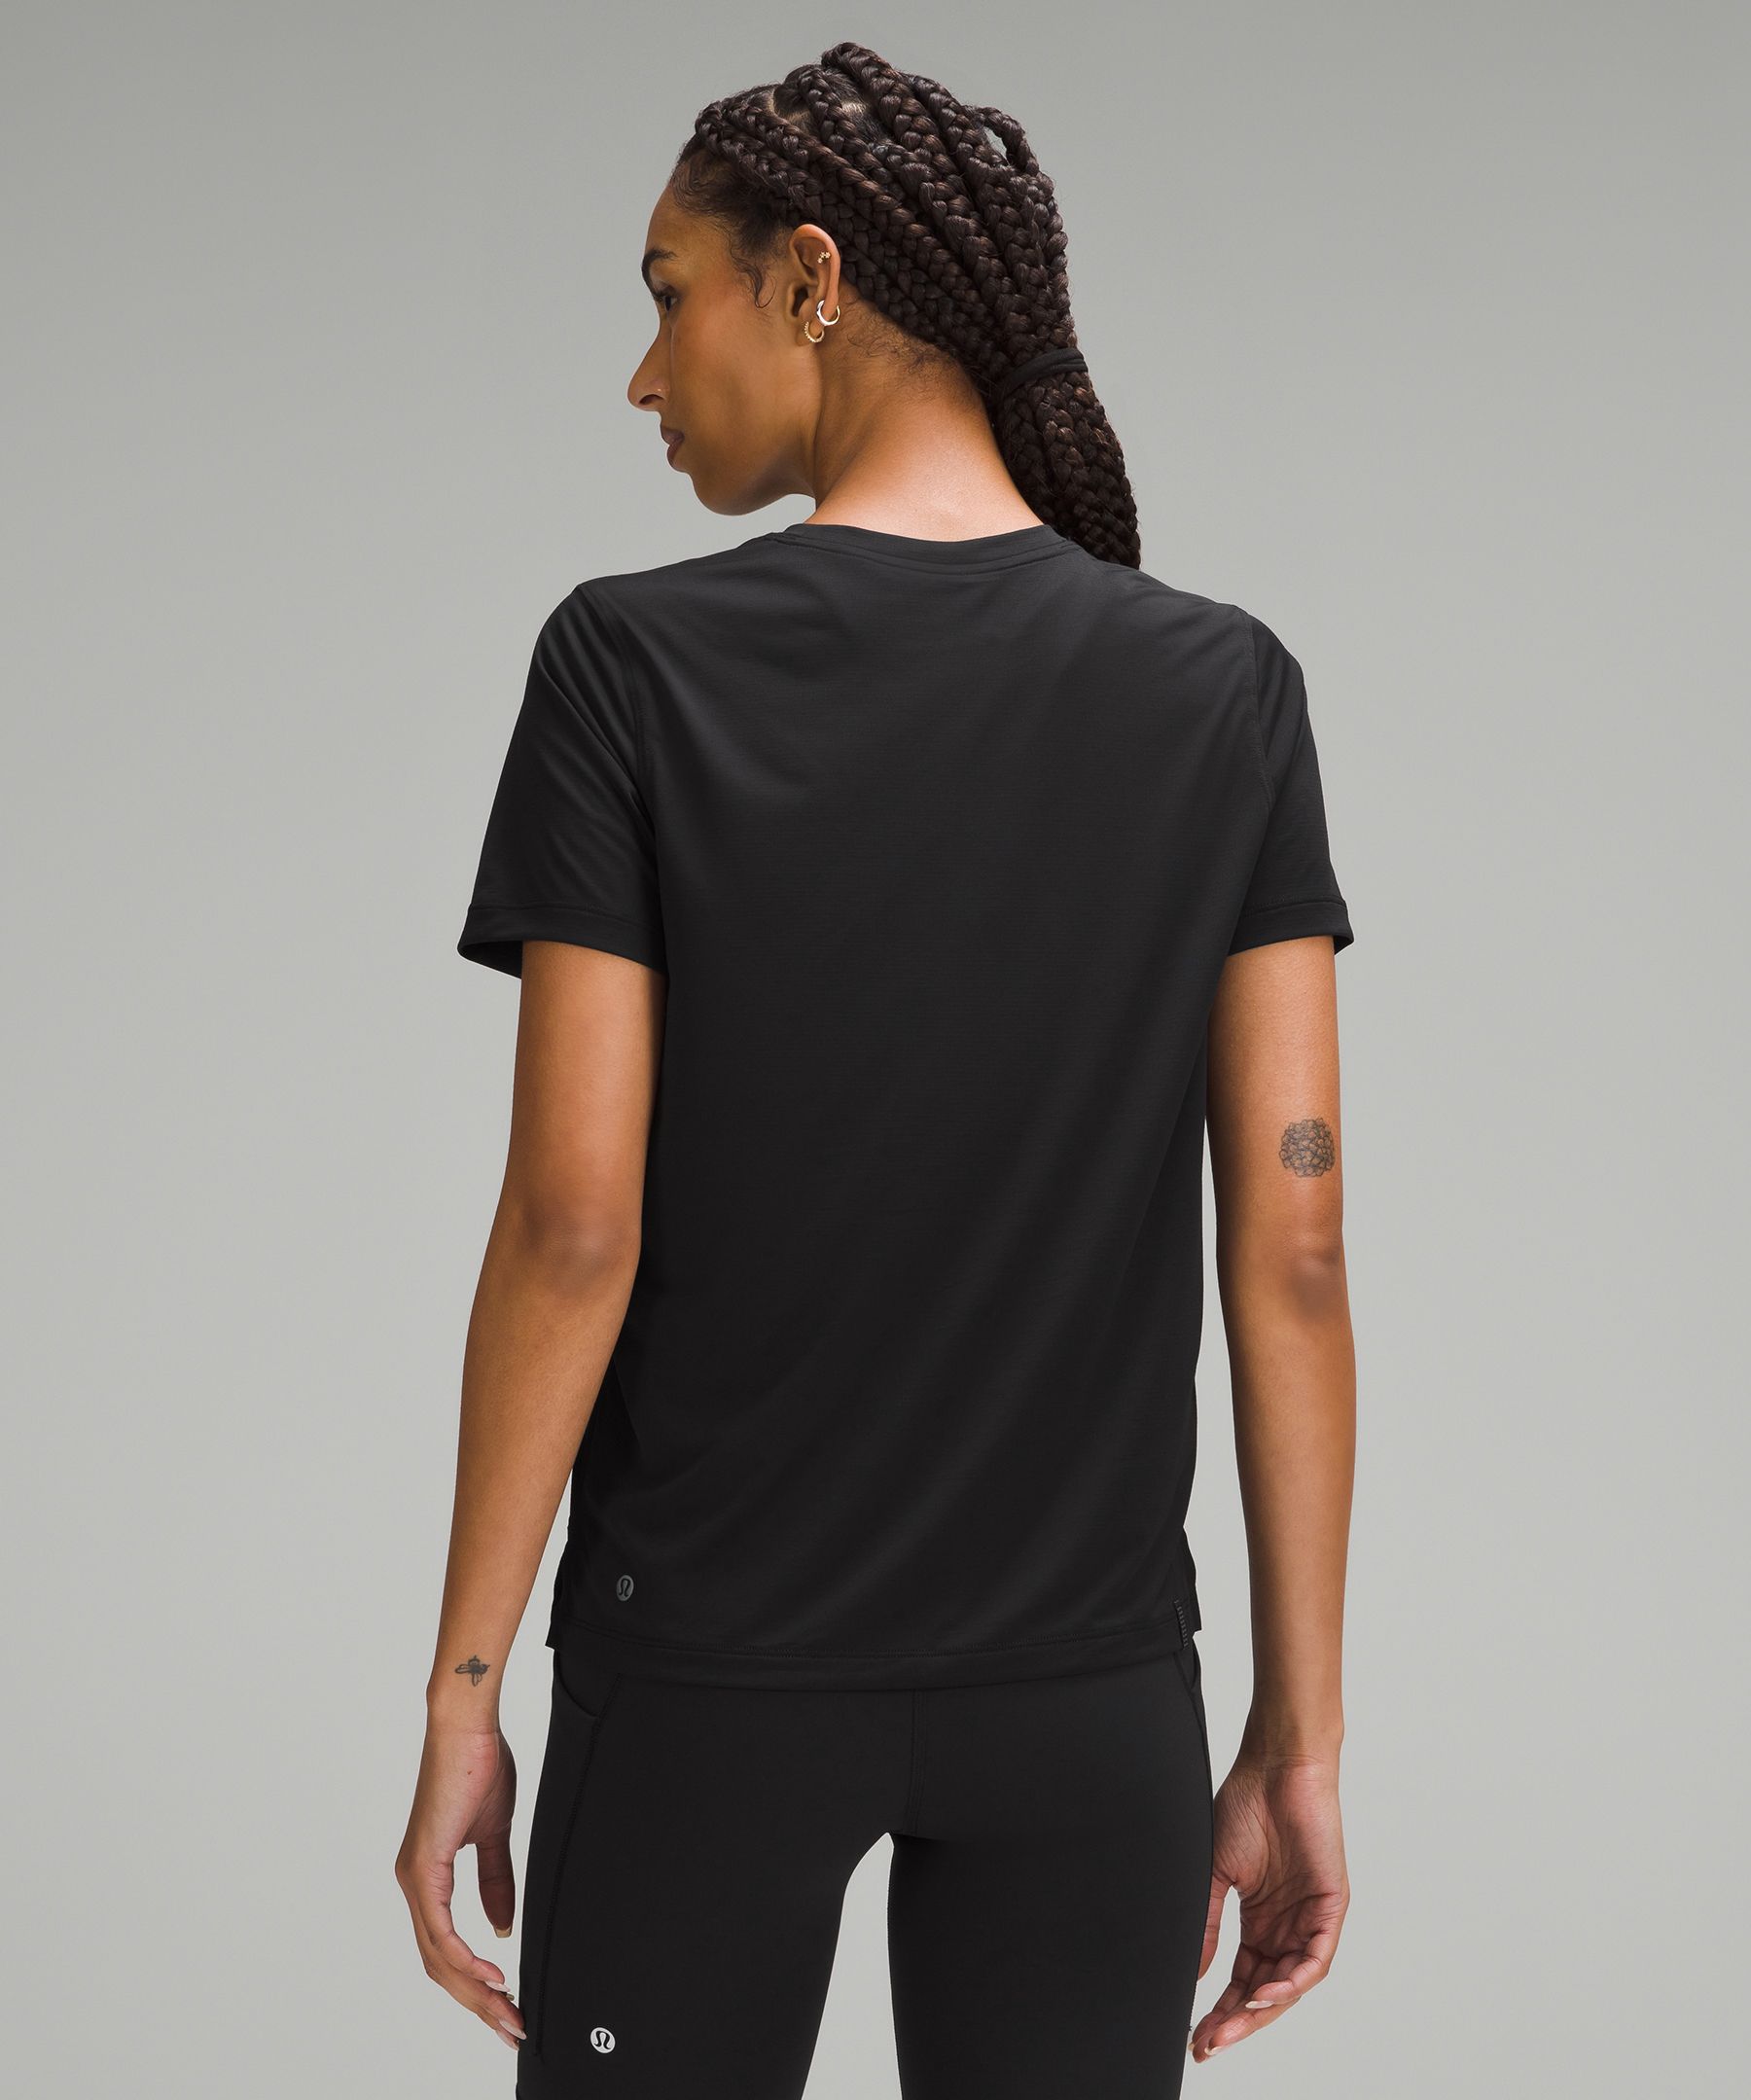 Lululemon Softstreme Gathered T-Shirt - Black / Size 4